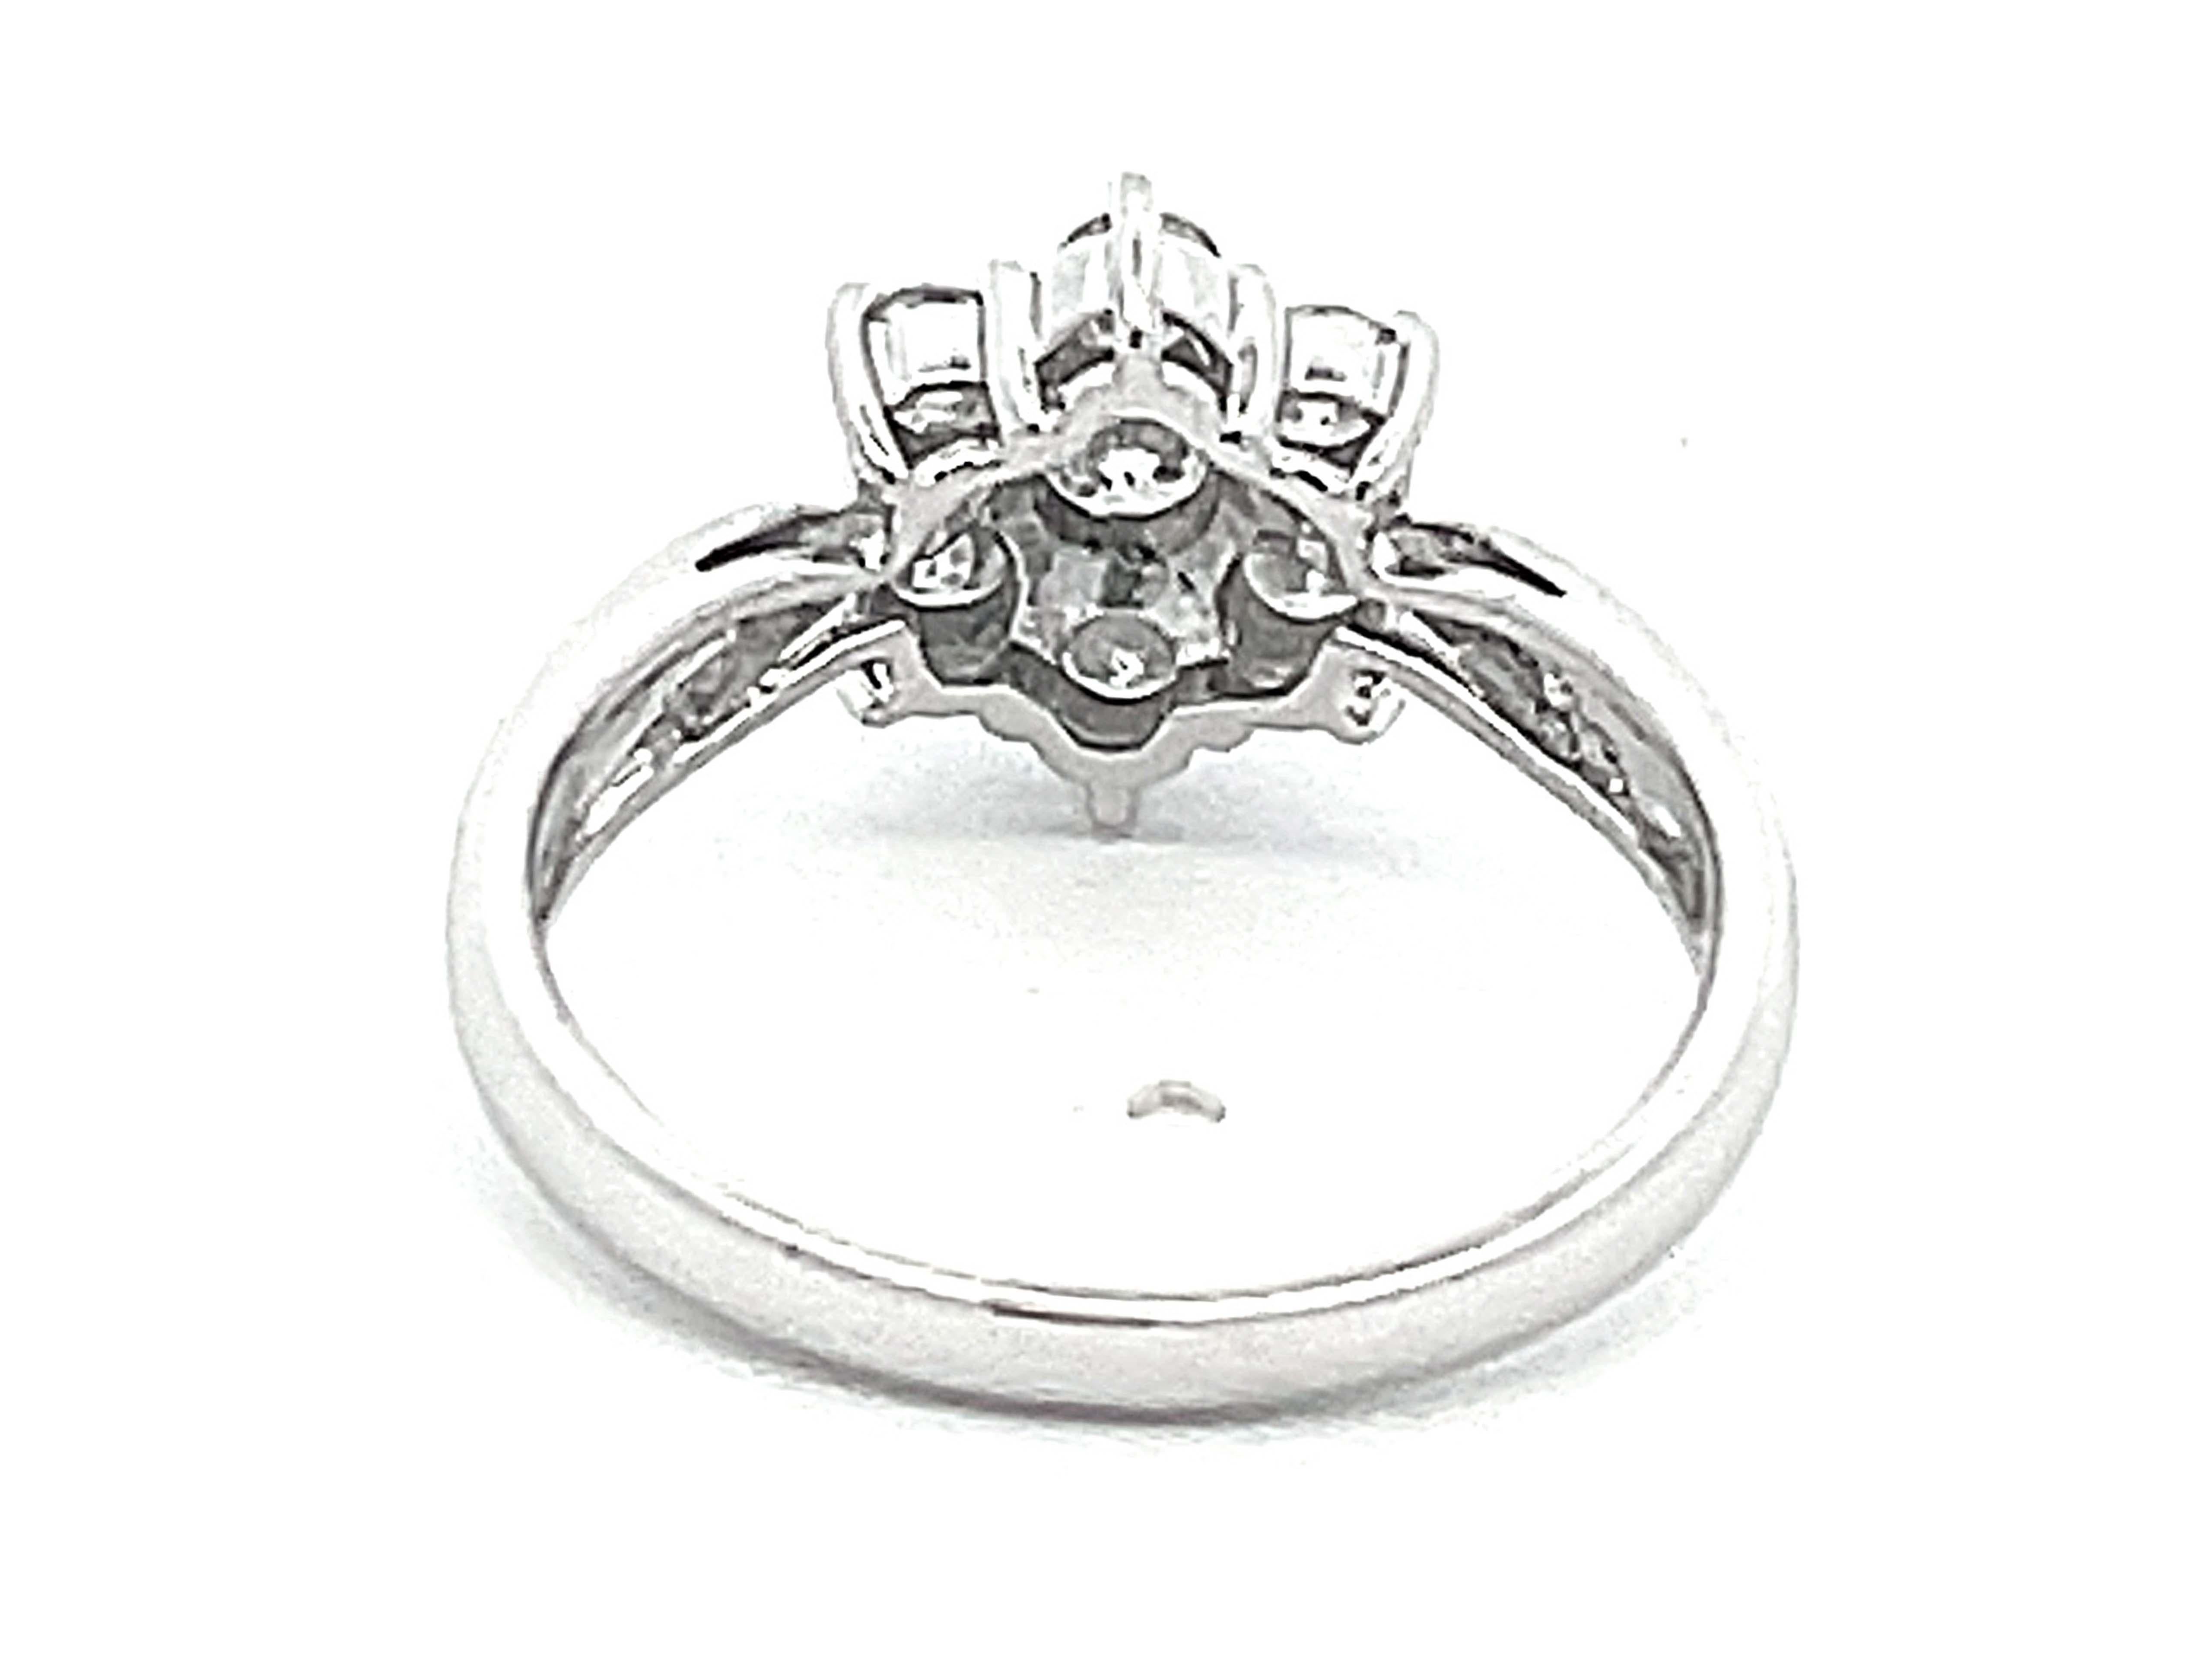 7 Diamond Flower Ring in 18k White Gold For Sale 1